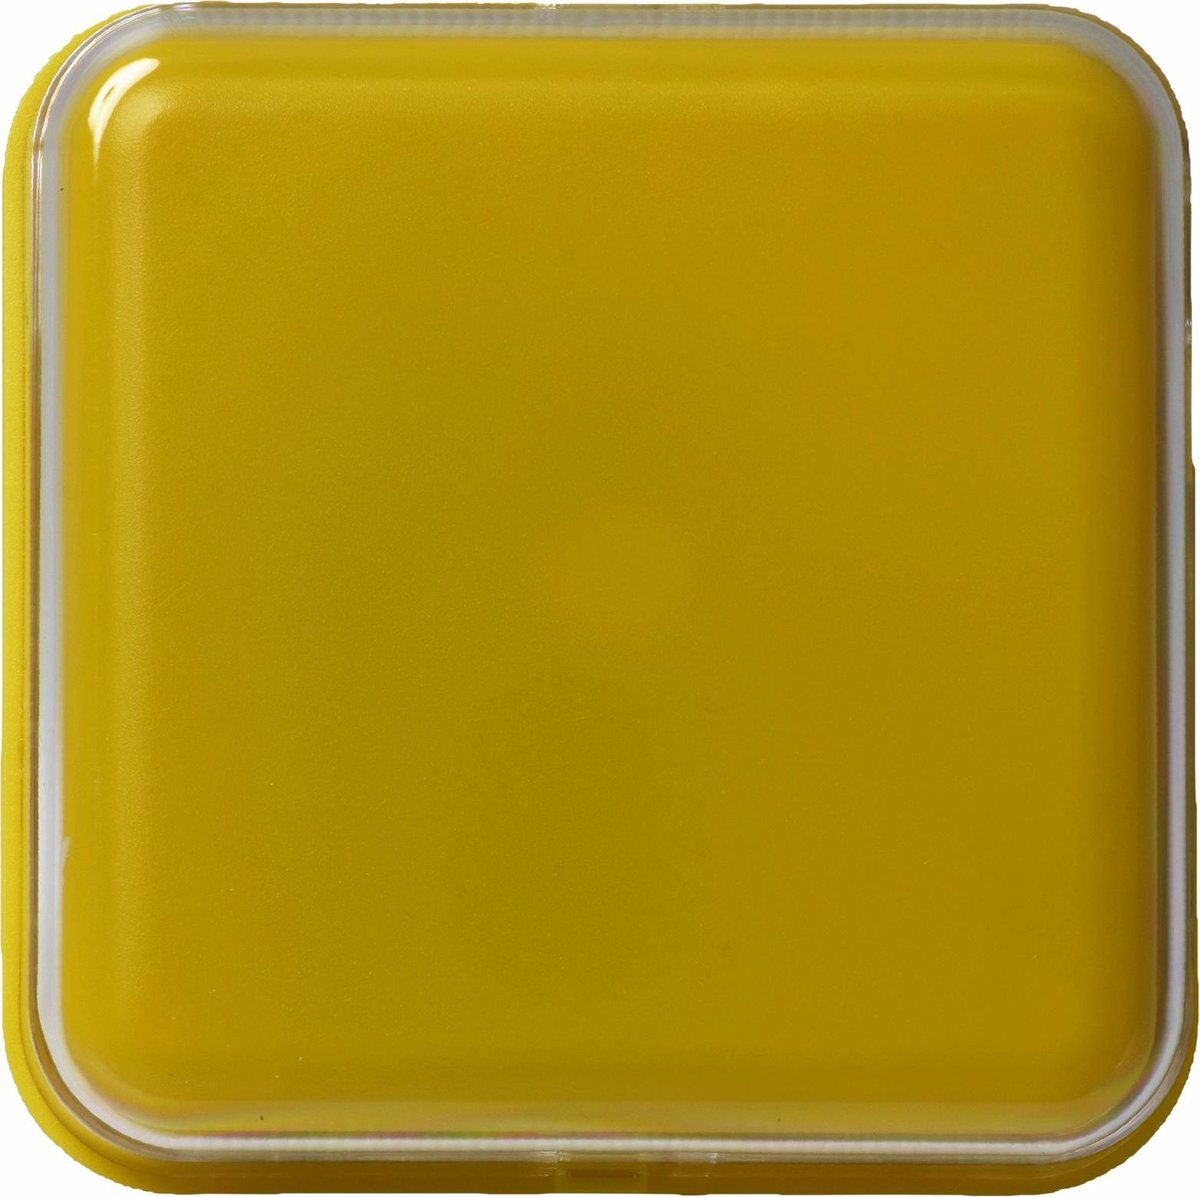 Praatknop met afbeelding - vierkant - geel